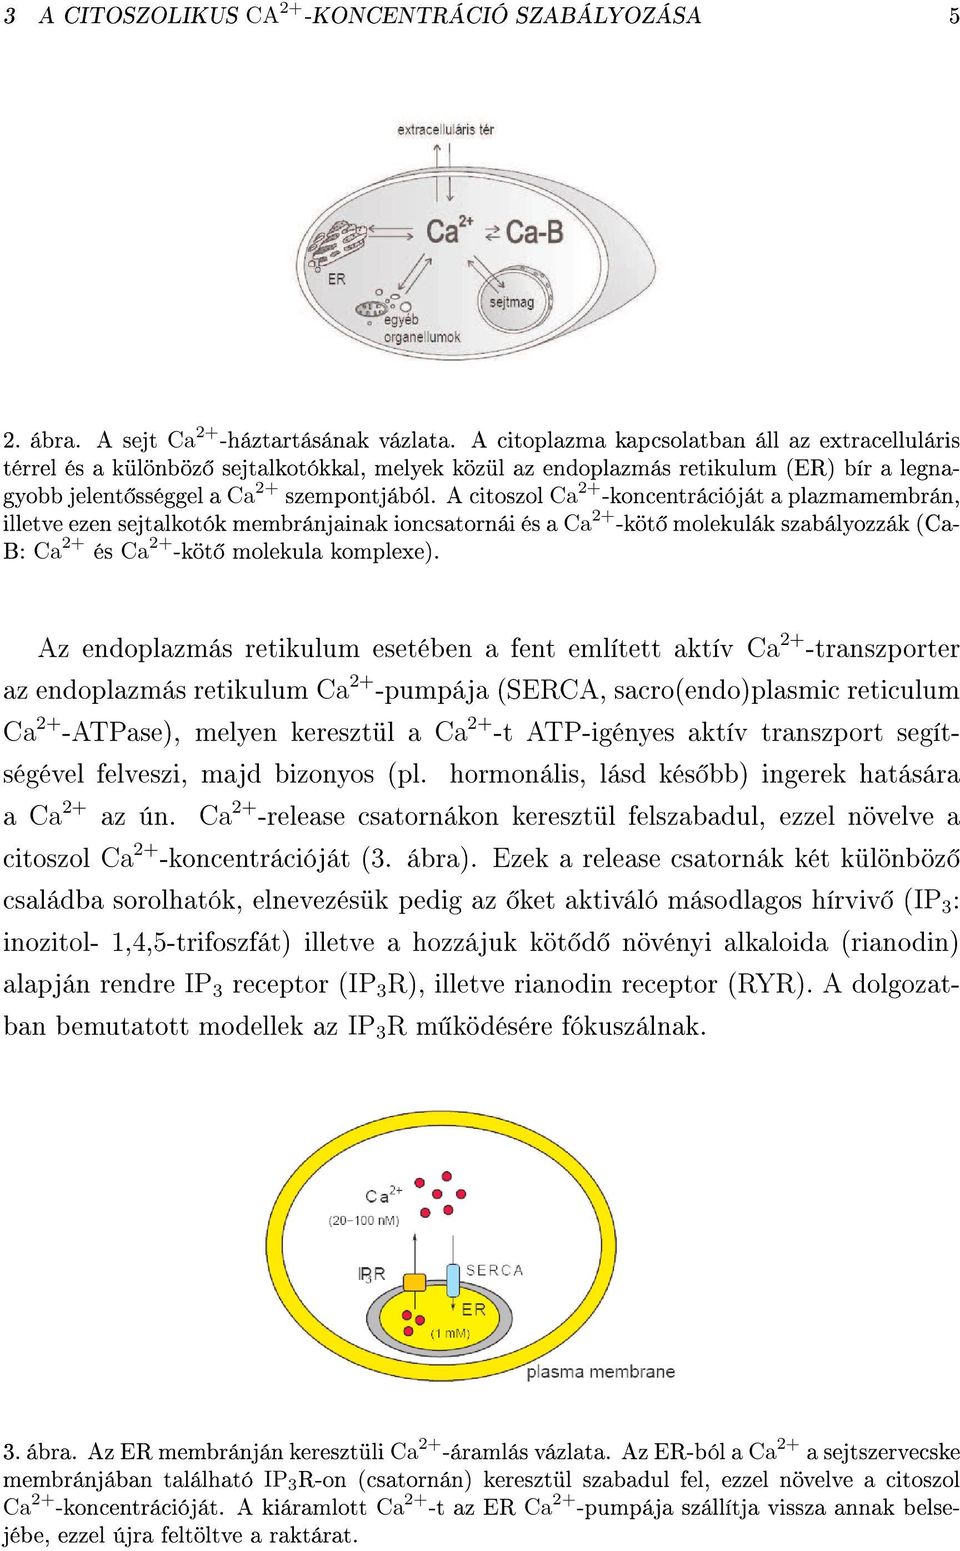 A citoszol Ca 2+ -koncentrációját a plazmamembrán, illetve ezen sejtalkotók membránjainak ioncsatornái és a Ca 2+ -köt molekulák szabálozzák (Ca- B: Ca 2+ és Ca 2+ -köt molekula komplexe).